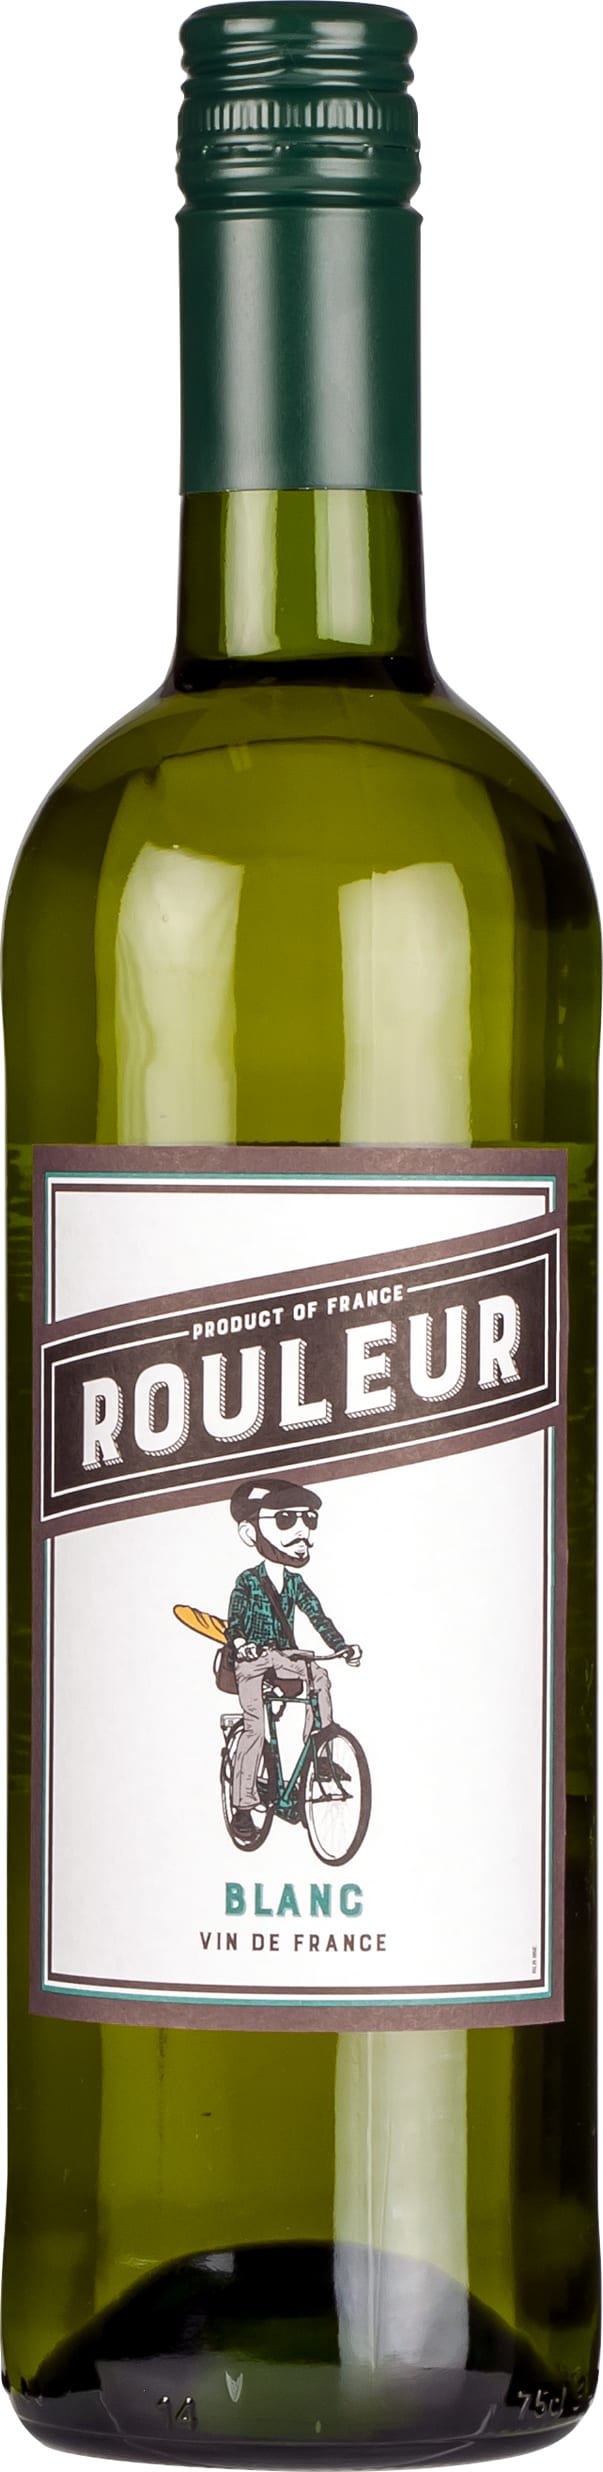 Le Rouleur Blanc de Blancs, Vin de France 2022 75cl - Buy Le Rouleur Wines from GREAT WINES DIRECT wine shop